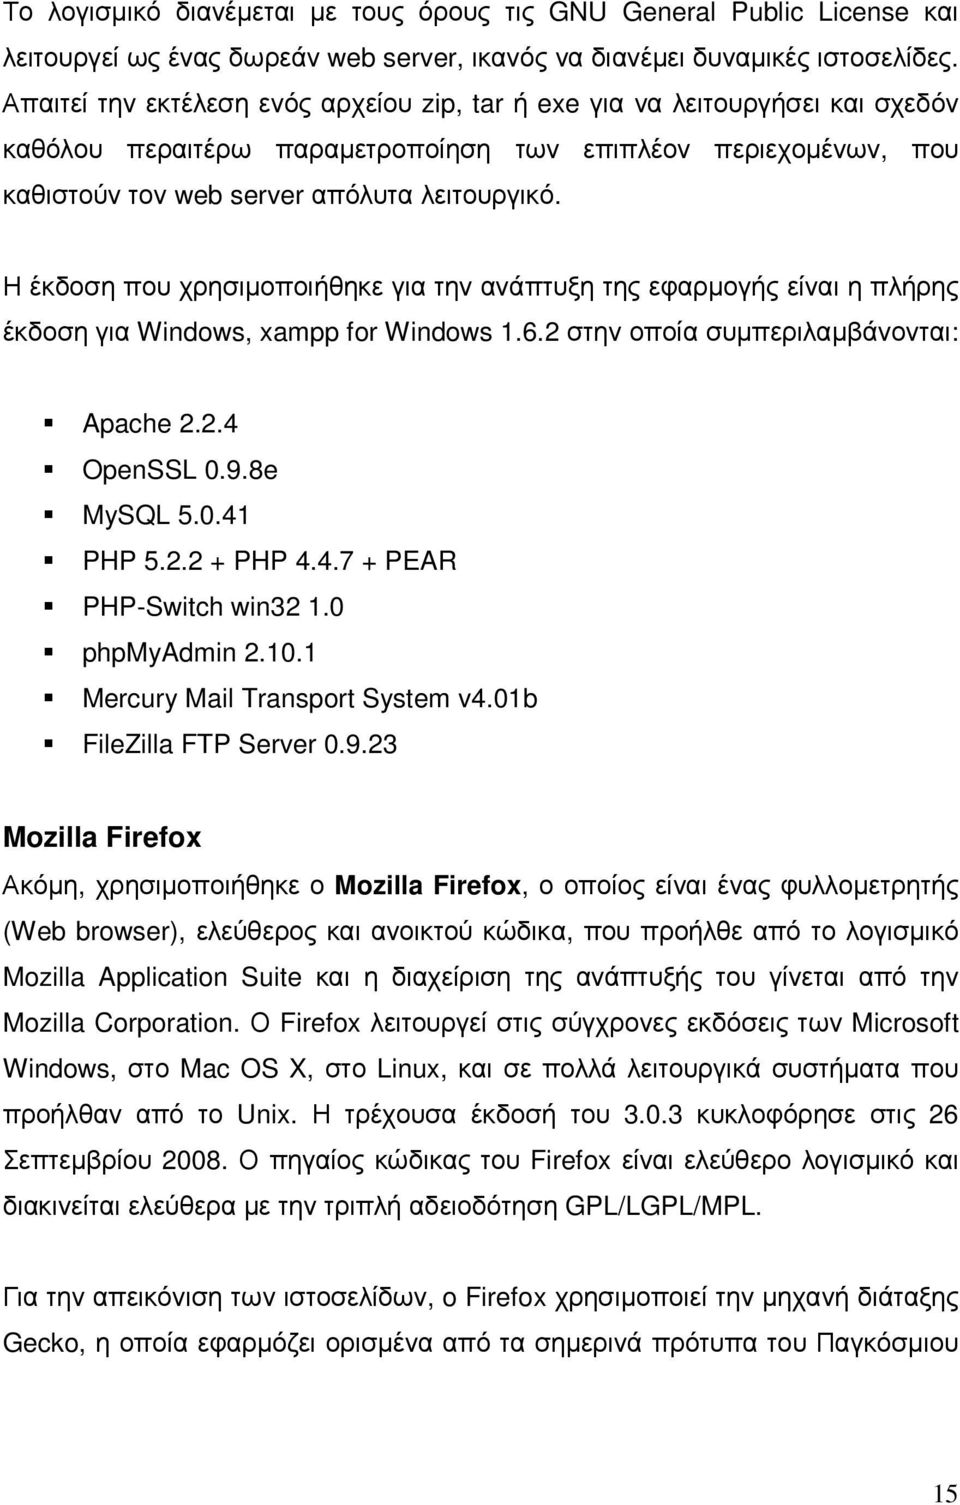 Η έκδοση που χρησιµοποιήθηκε για την ανάπτυξη της εφαρµογής είναι η πλήρης έκδοση για Windows, xampp for Windows 1.6.2 στην οποία συµπεριλαµβάνονται: Apache 2.2.4 OpenSSL 0.9.8e MySQL 5.0.41 PHP 5.2.2 + PHP 4.